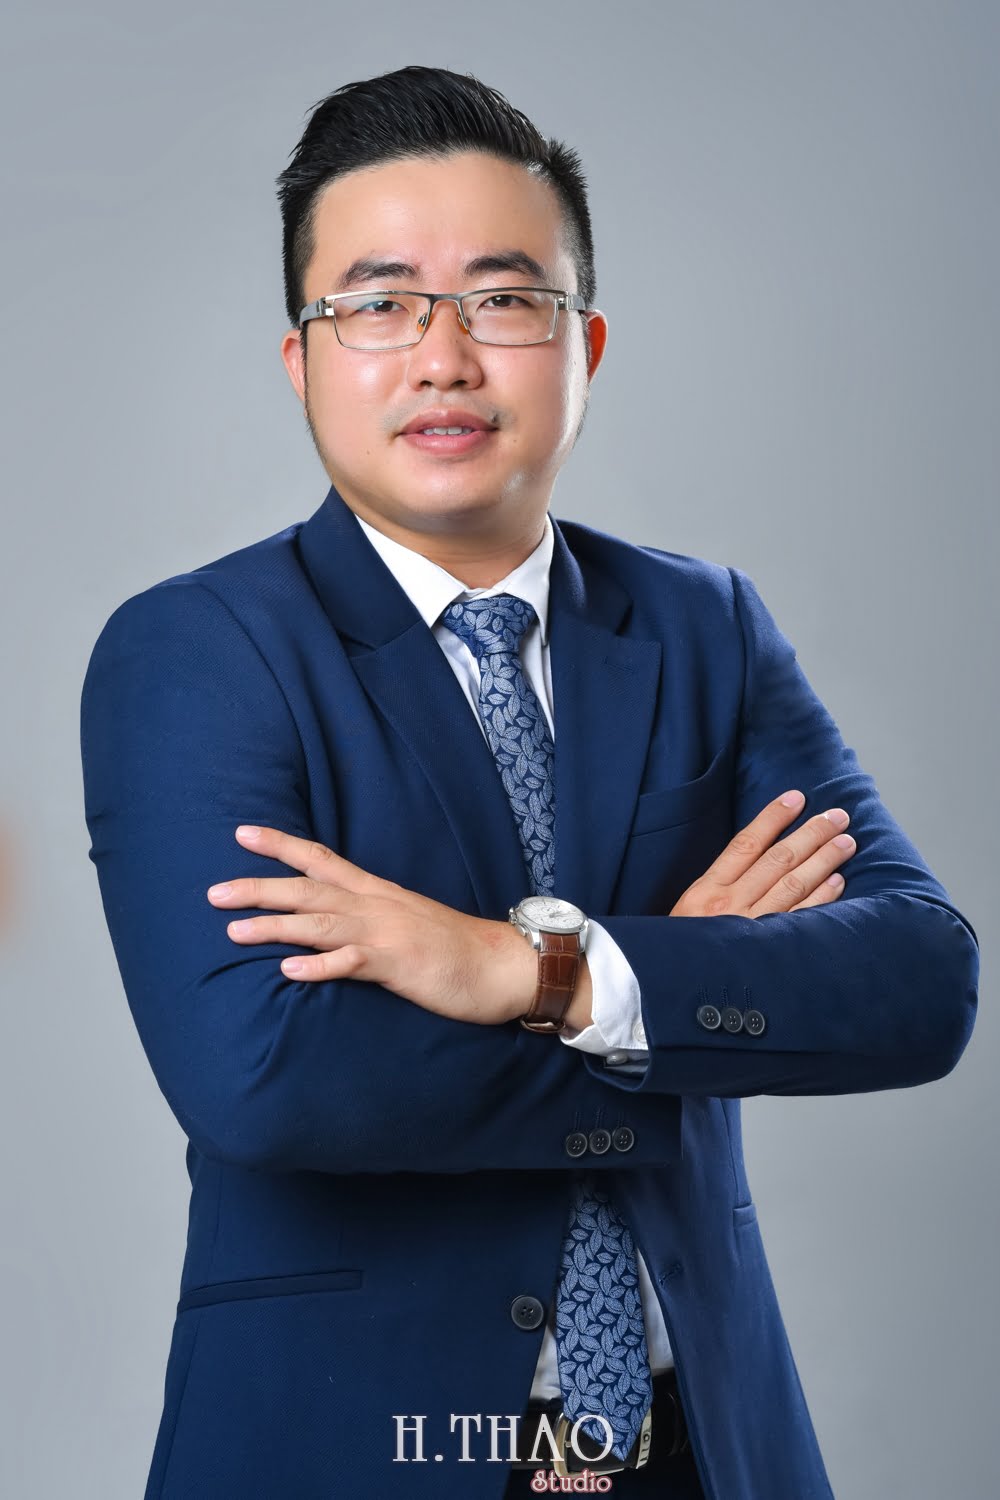 Anh profile cong ty 8 - Dịch vụ chụp ảnh CV đẹp, chuyên nghiệp tại Tp.HCM - HThao Studio